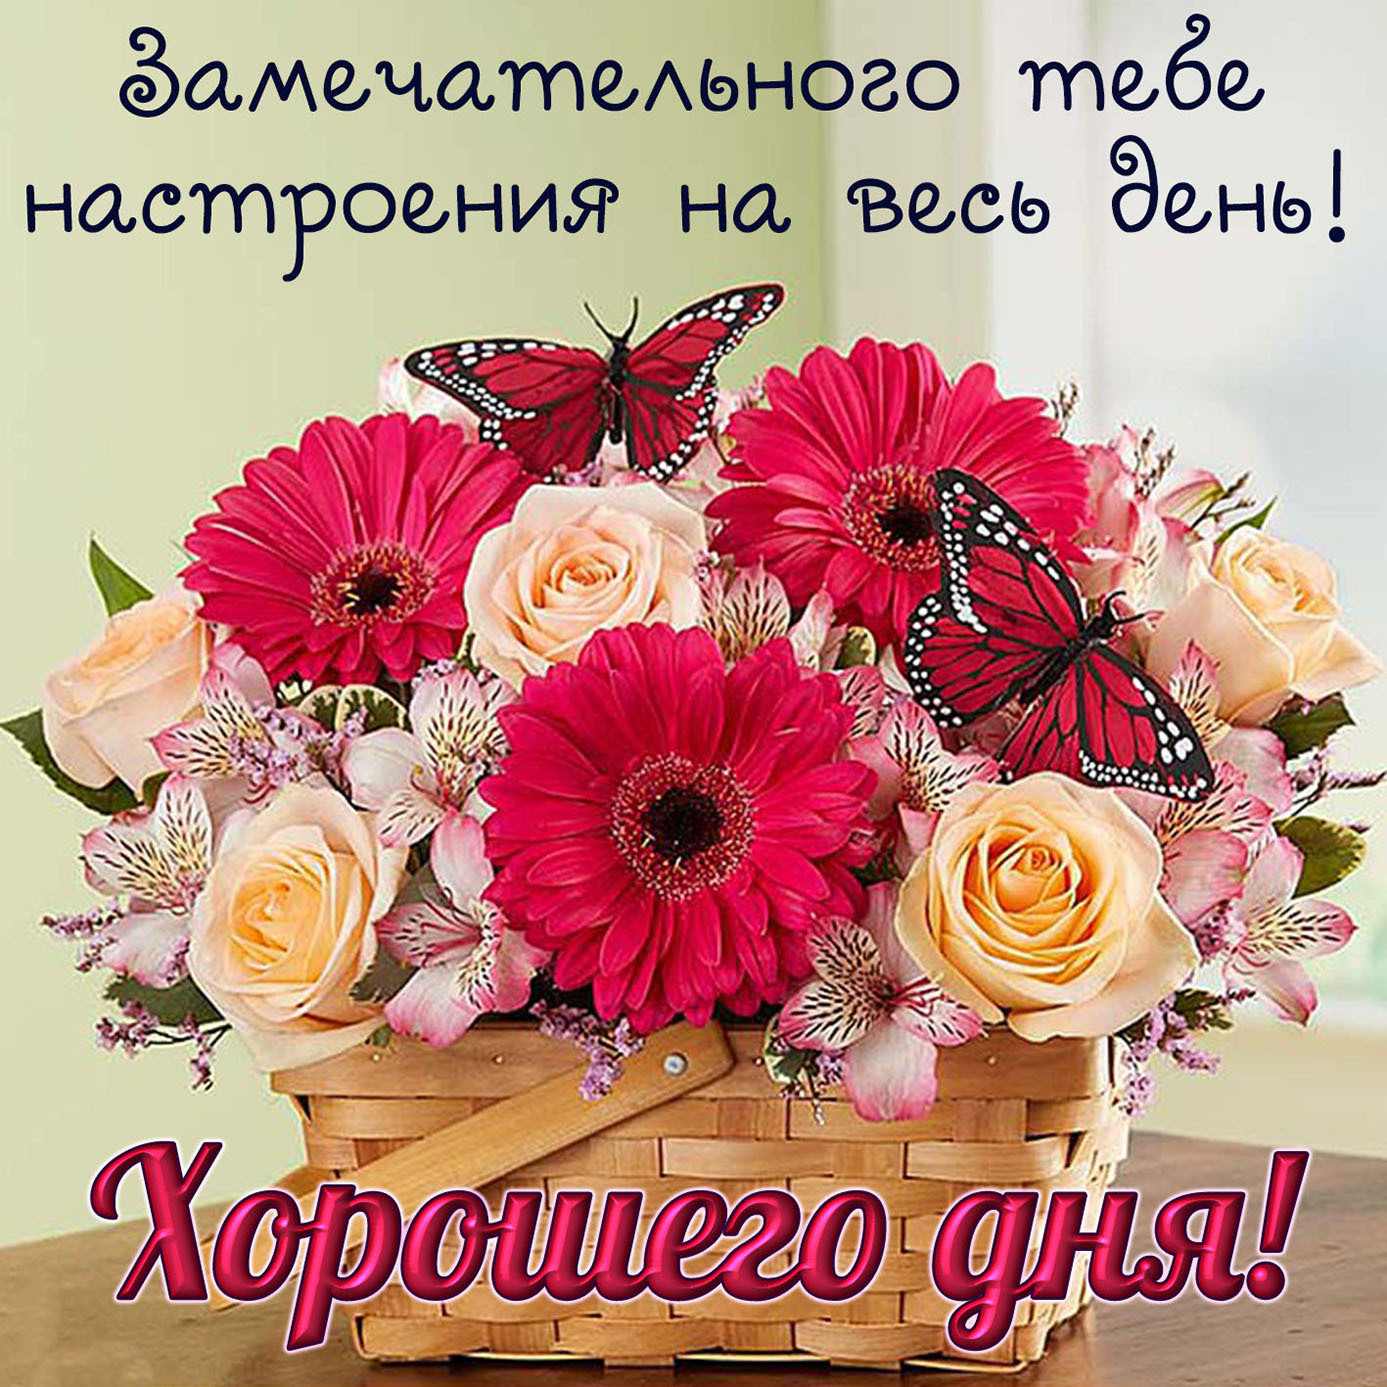 Доброго дня тете. Хорошего дня и отличного настроения. Цветы с пожеланиями хорошего дня. Поздравления с хорошим настроением. Поздравления с добрым днем и с хорошим настроением.